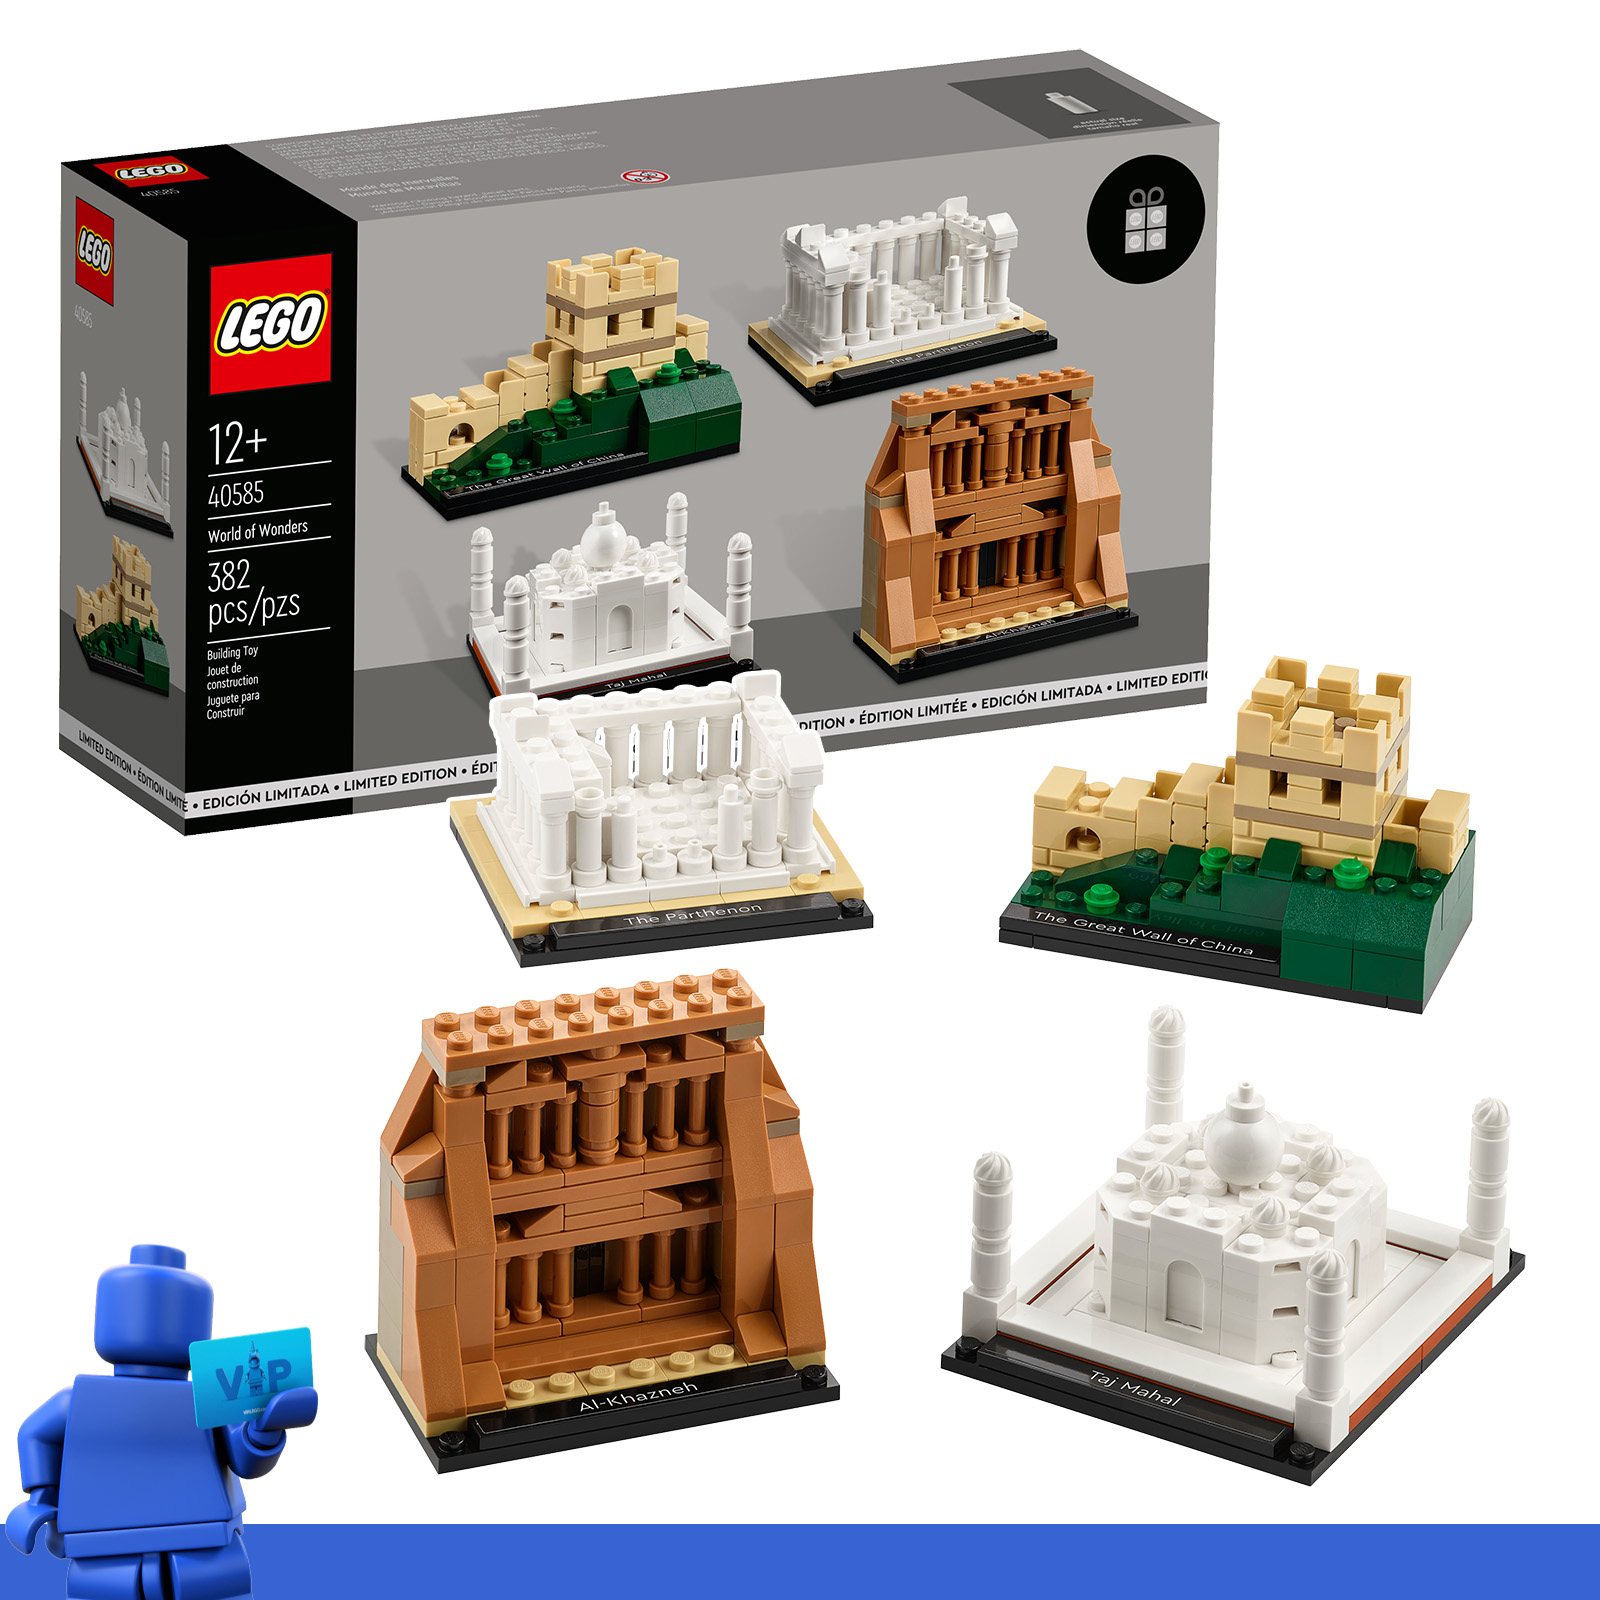 Im VIP-Belohnungscenter: LEGO-Sets 40584 Geburtstagsdiorama und 40585 Welt der Wunder sind gegen VIP-Punkte erhältlich